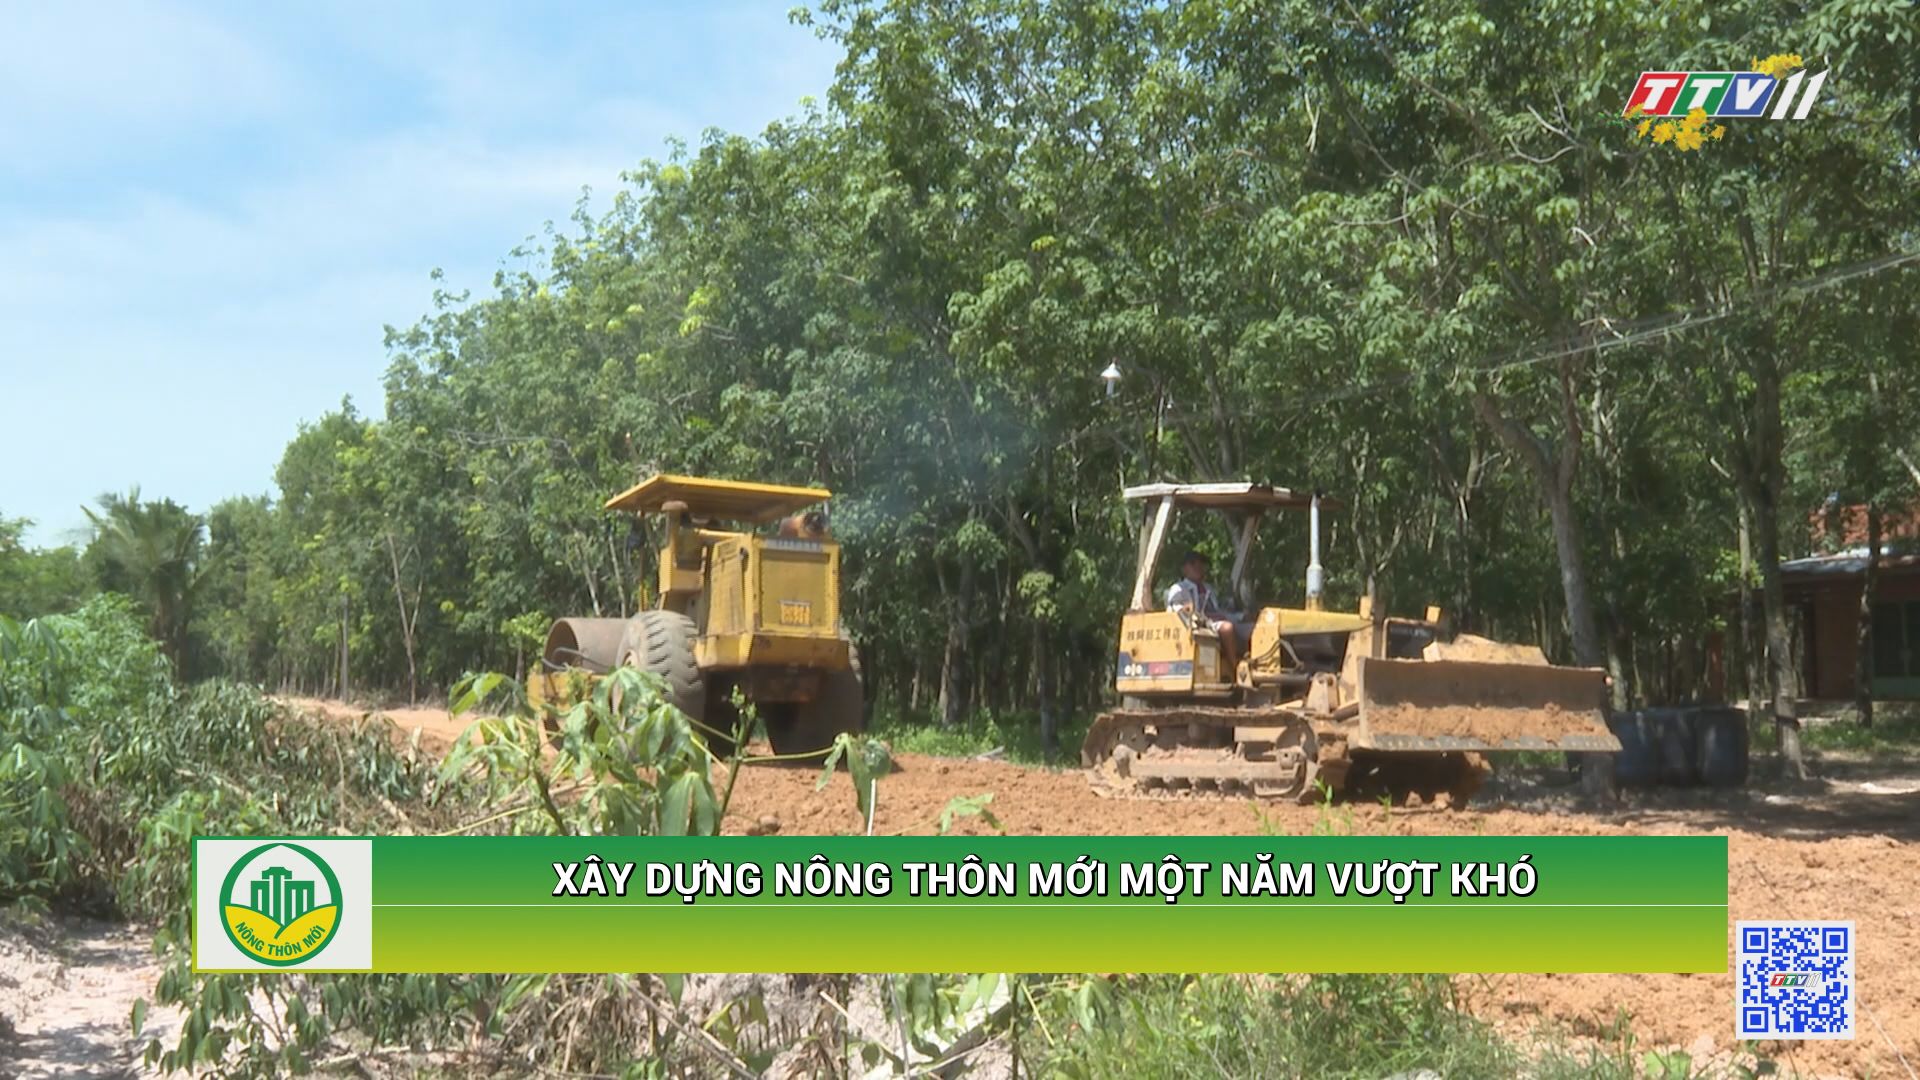 Xây dựng nông thôn mới một năm vượt khó | TÂY NINH XÂY DỰNG NÔNG THÔN MỚI | TayNinhTV